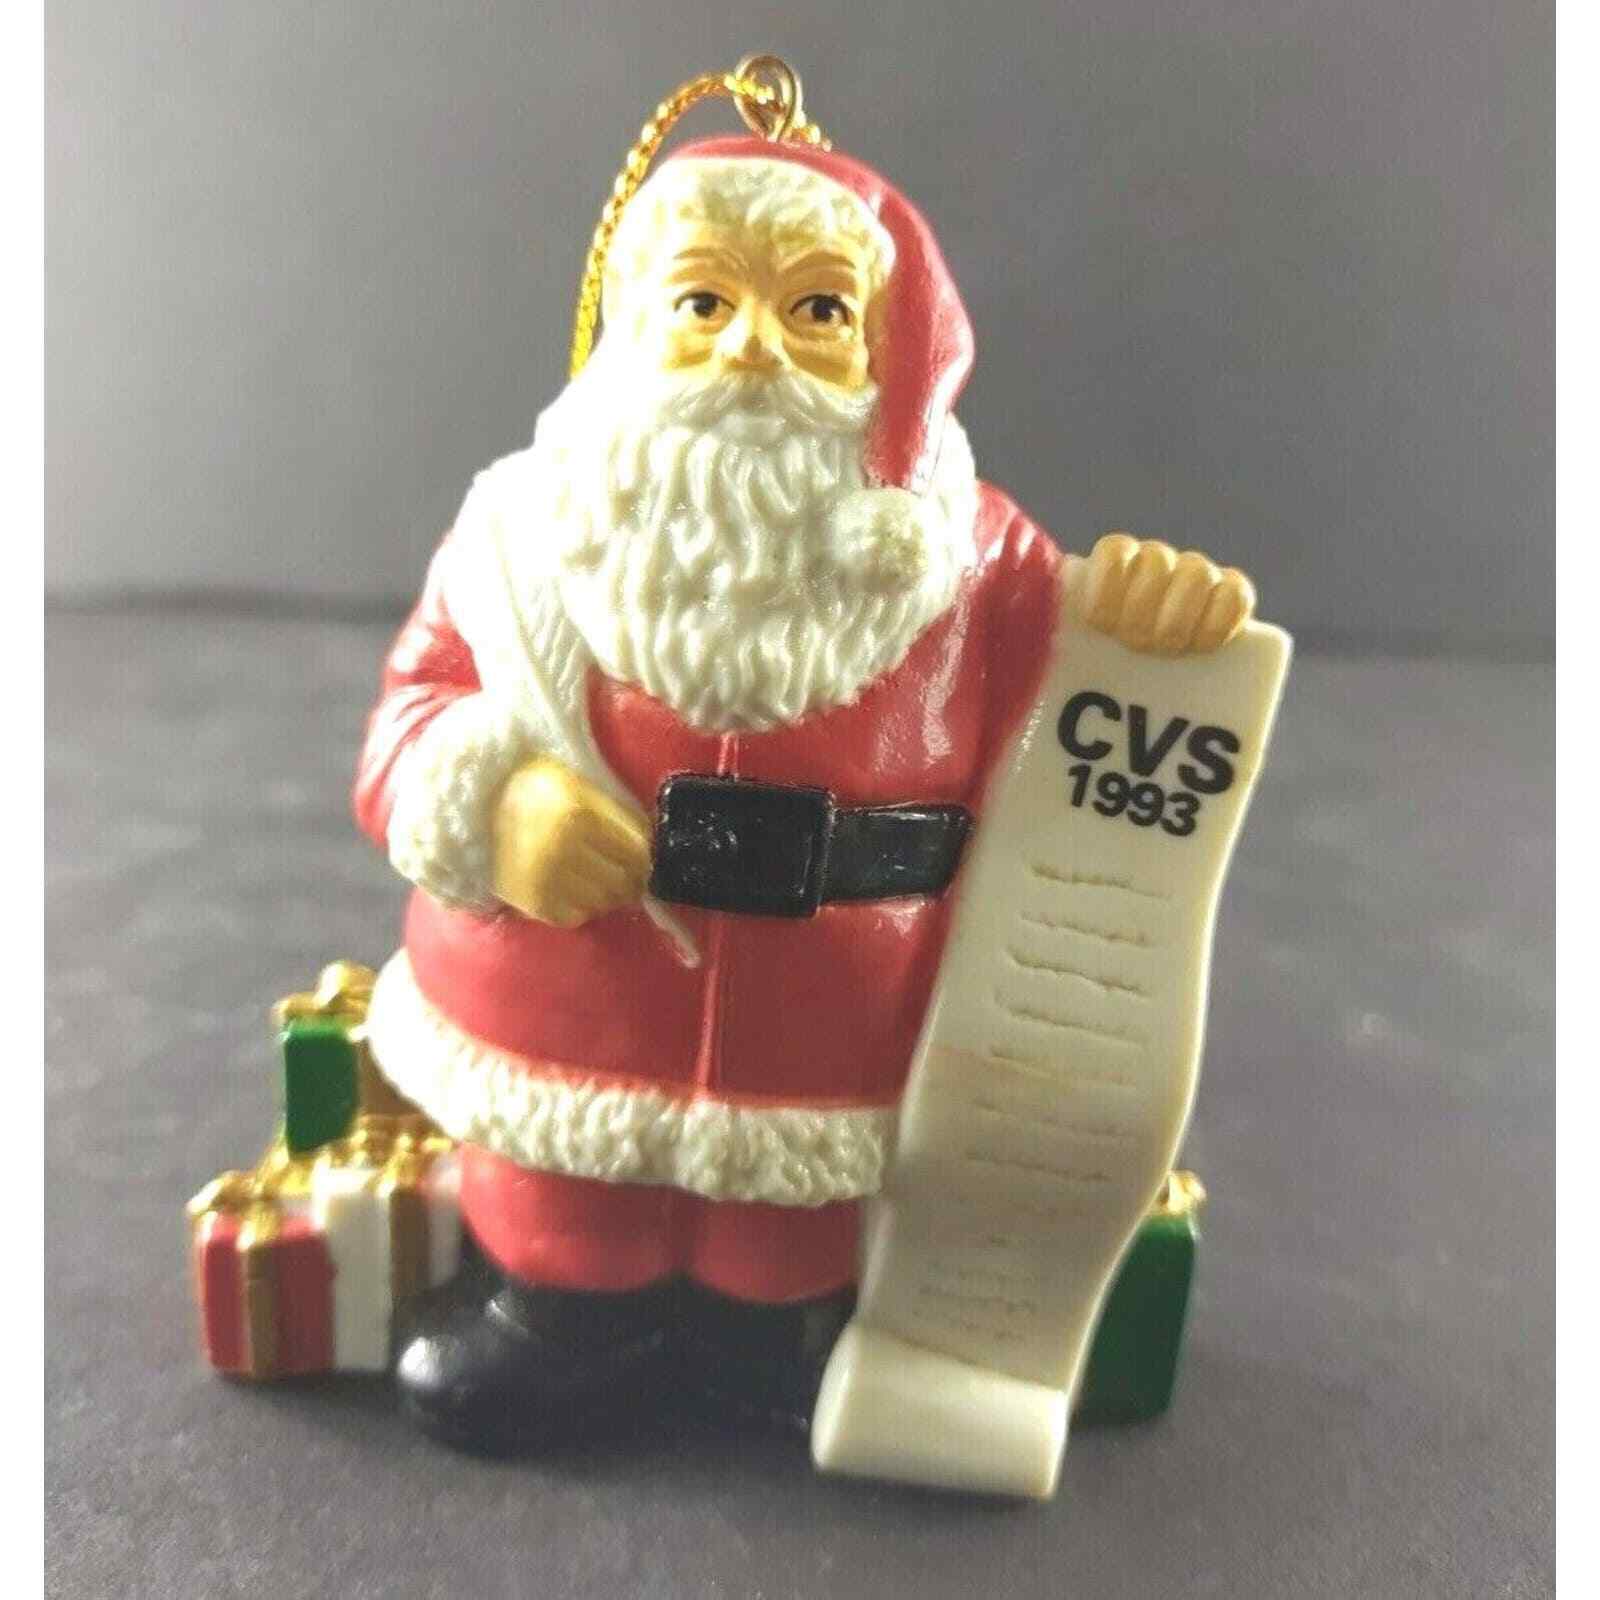 Flambro Imports Santa Cvs List Advertising Plastic Ornament 1993